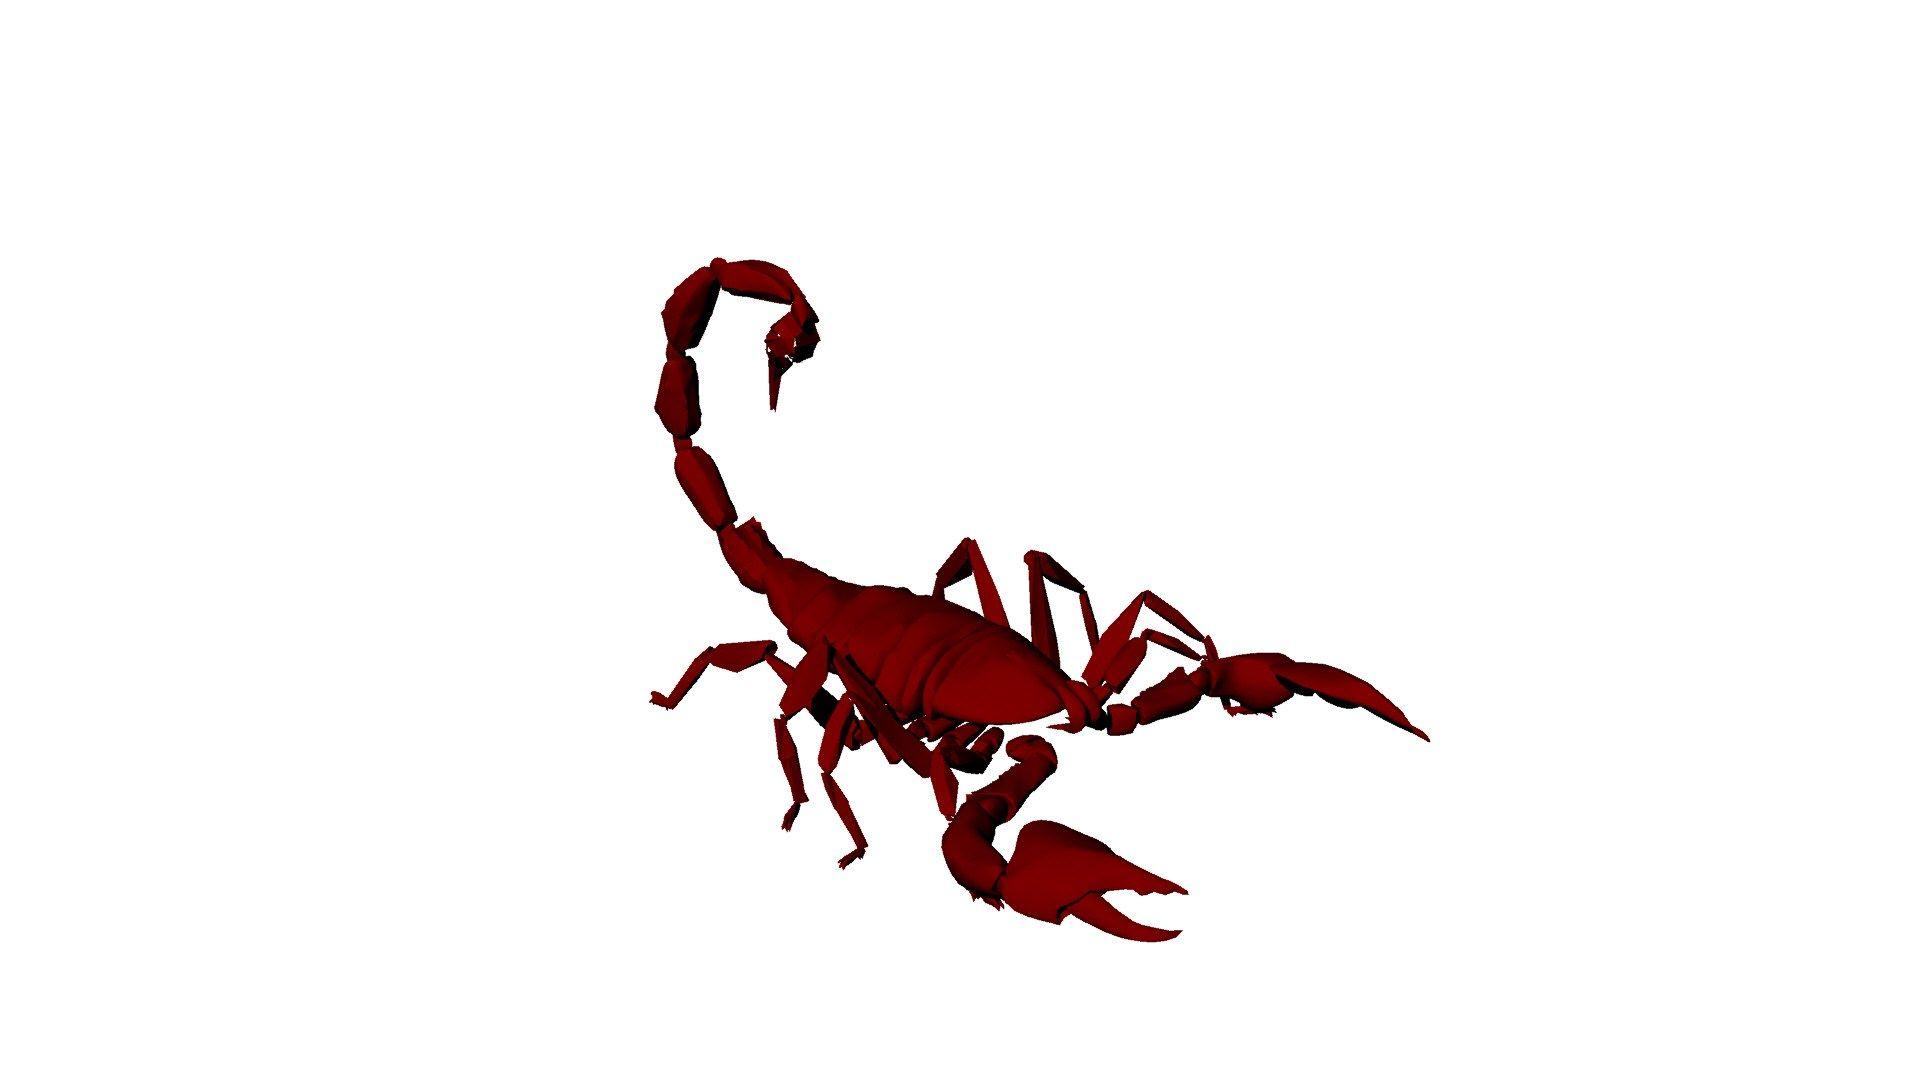 White with Red Circle Scorpion Logo - White Scorpion Logo Red Circle